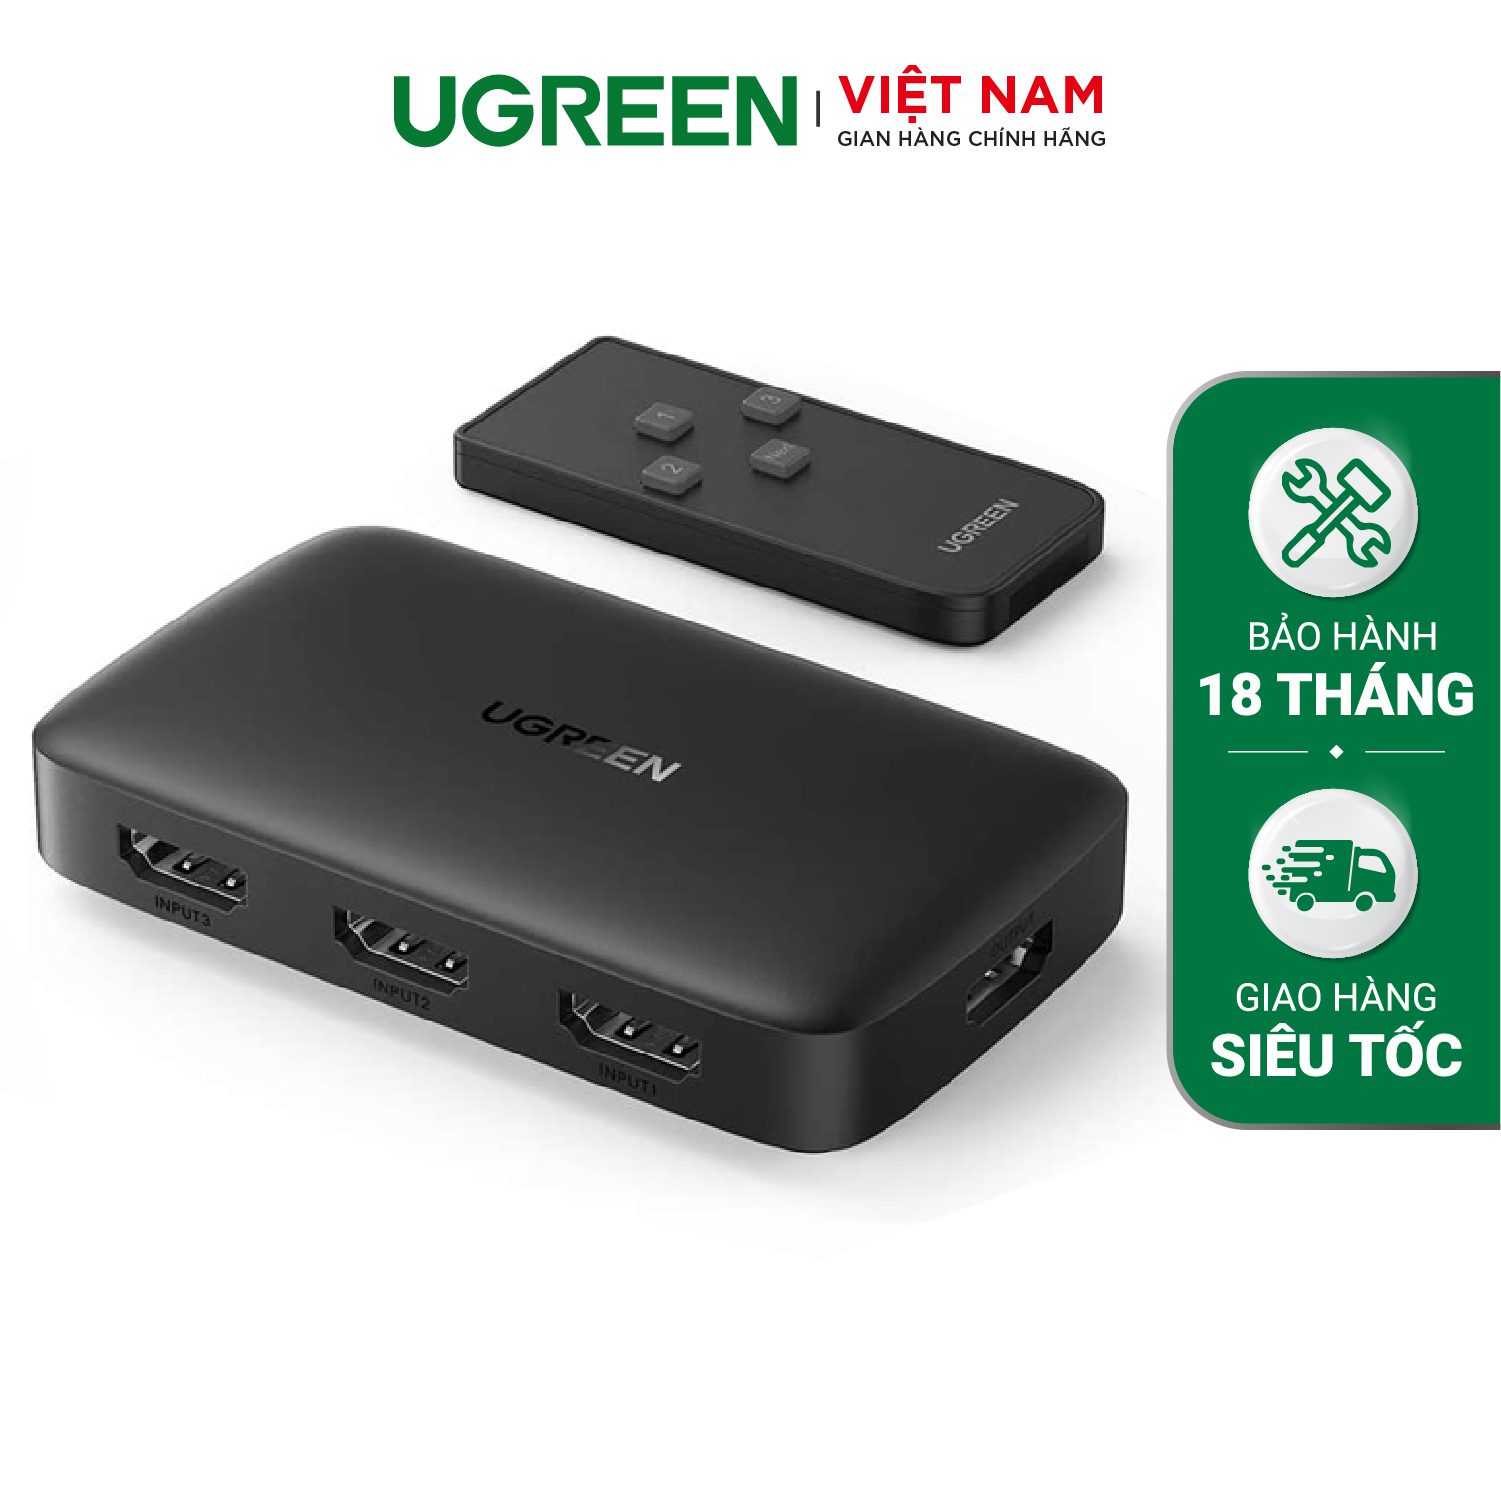 Bộ gộp HDMI 3 vào 1 UGREEN 80125 - Hỗ trợ phân giải Ultra Full HDR 4K 3840x2160@30Hz - Cấp nguồn cổng Micro USB 5V – Ugreen Việt Nam